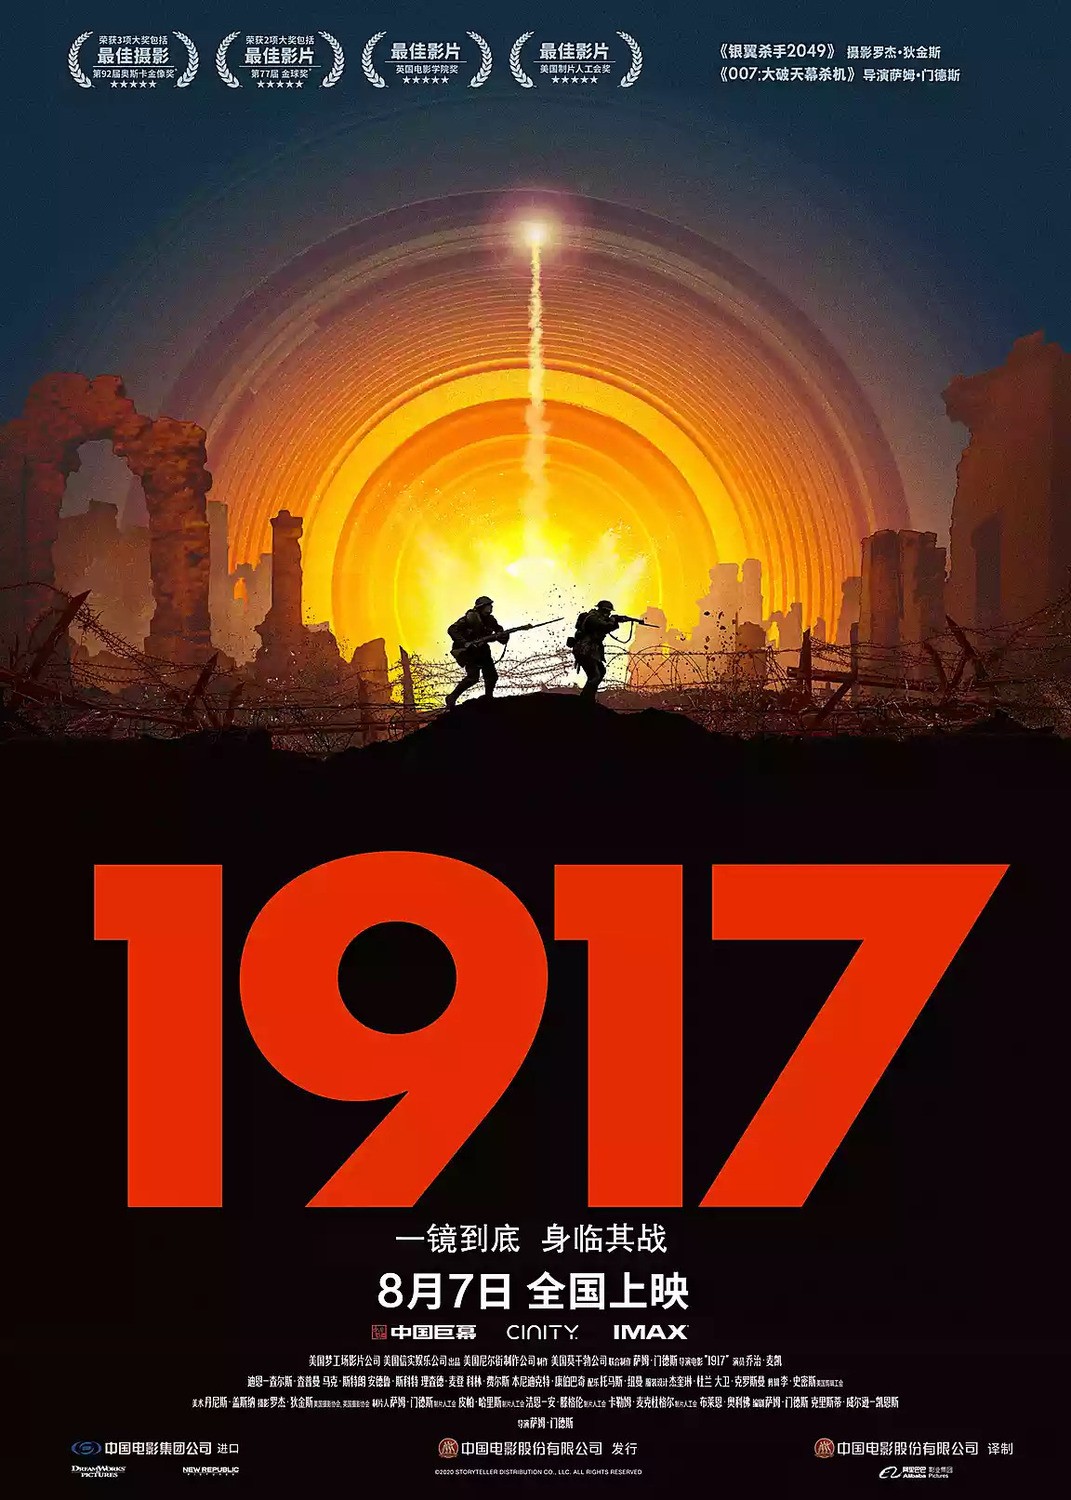 1917: постер N174376